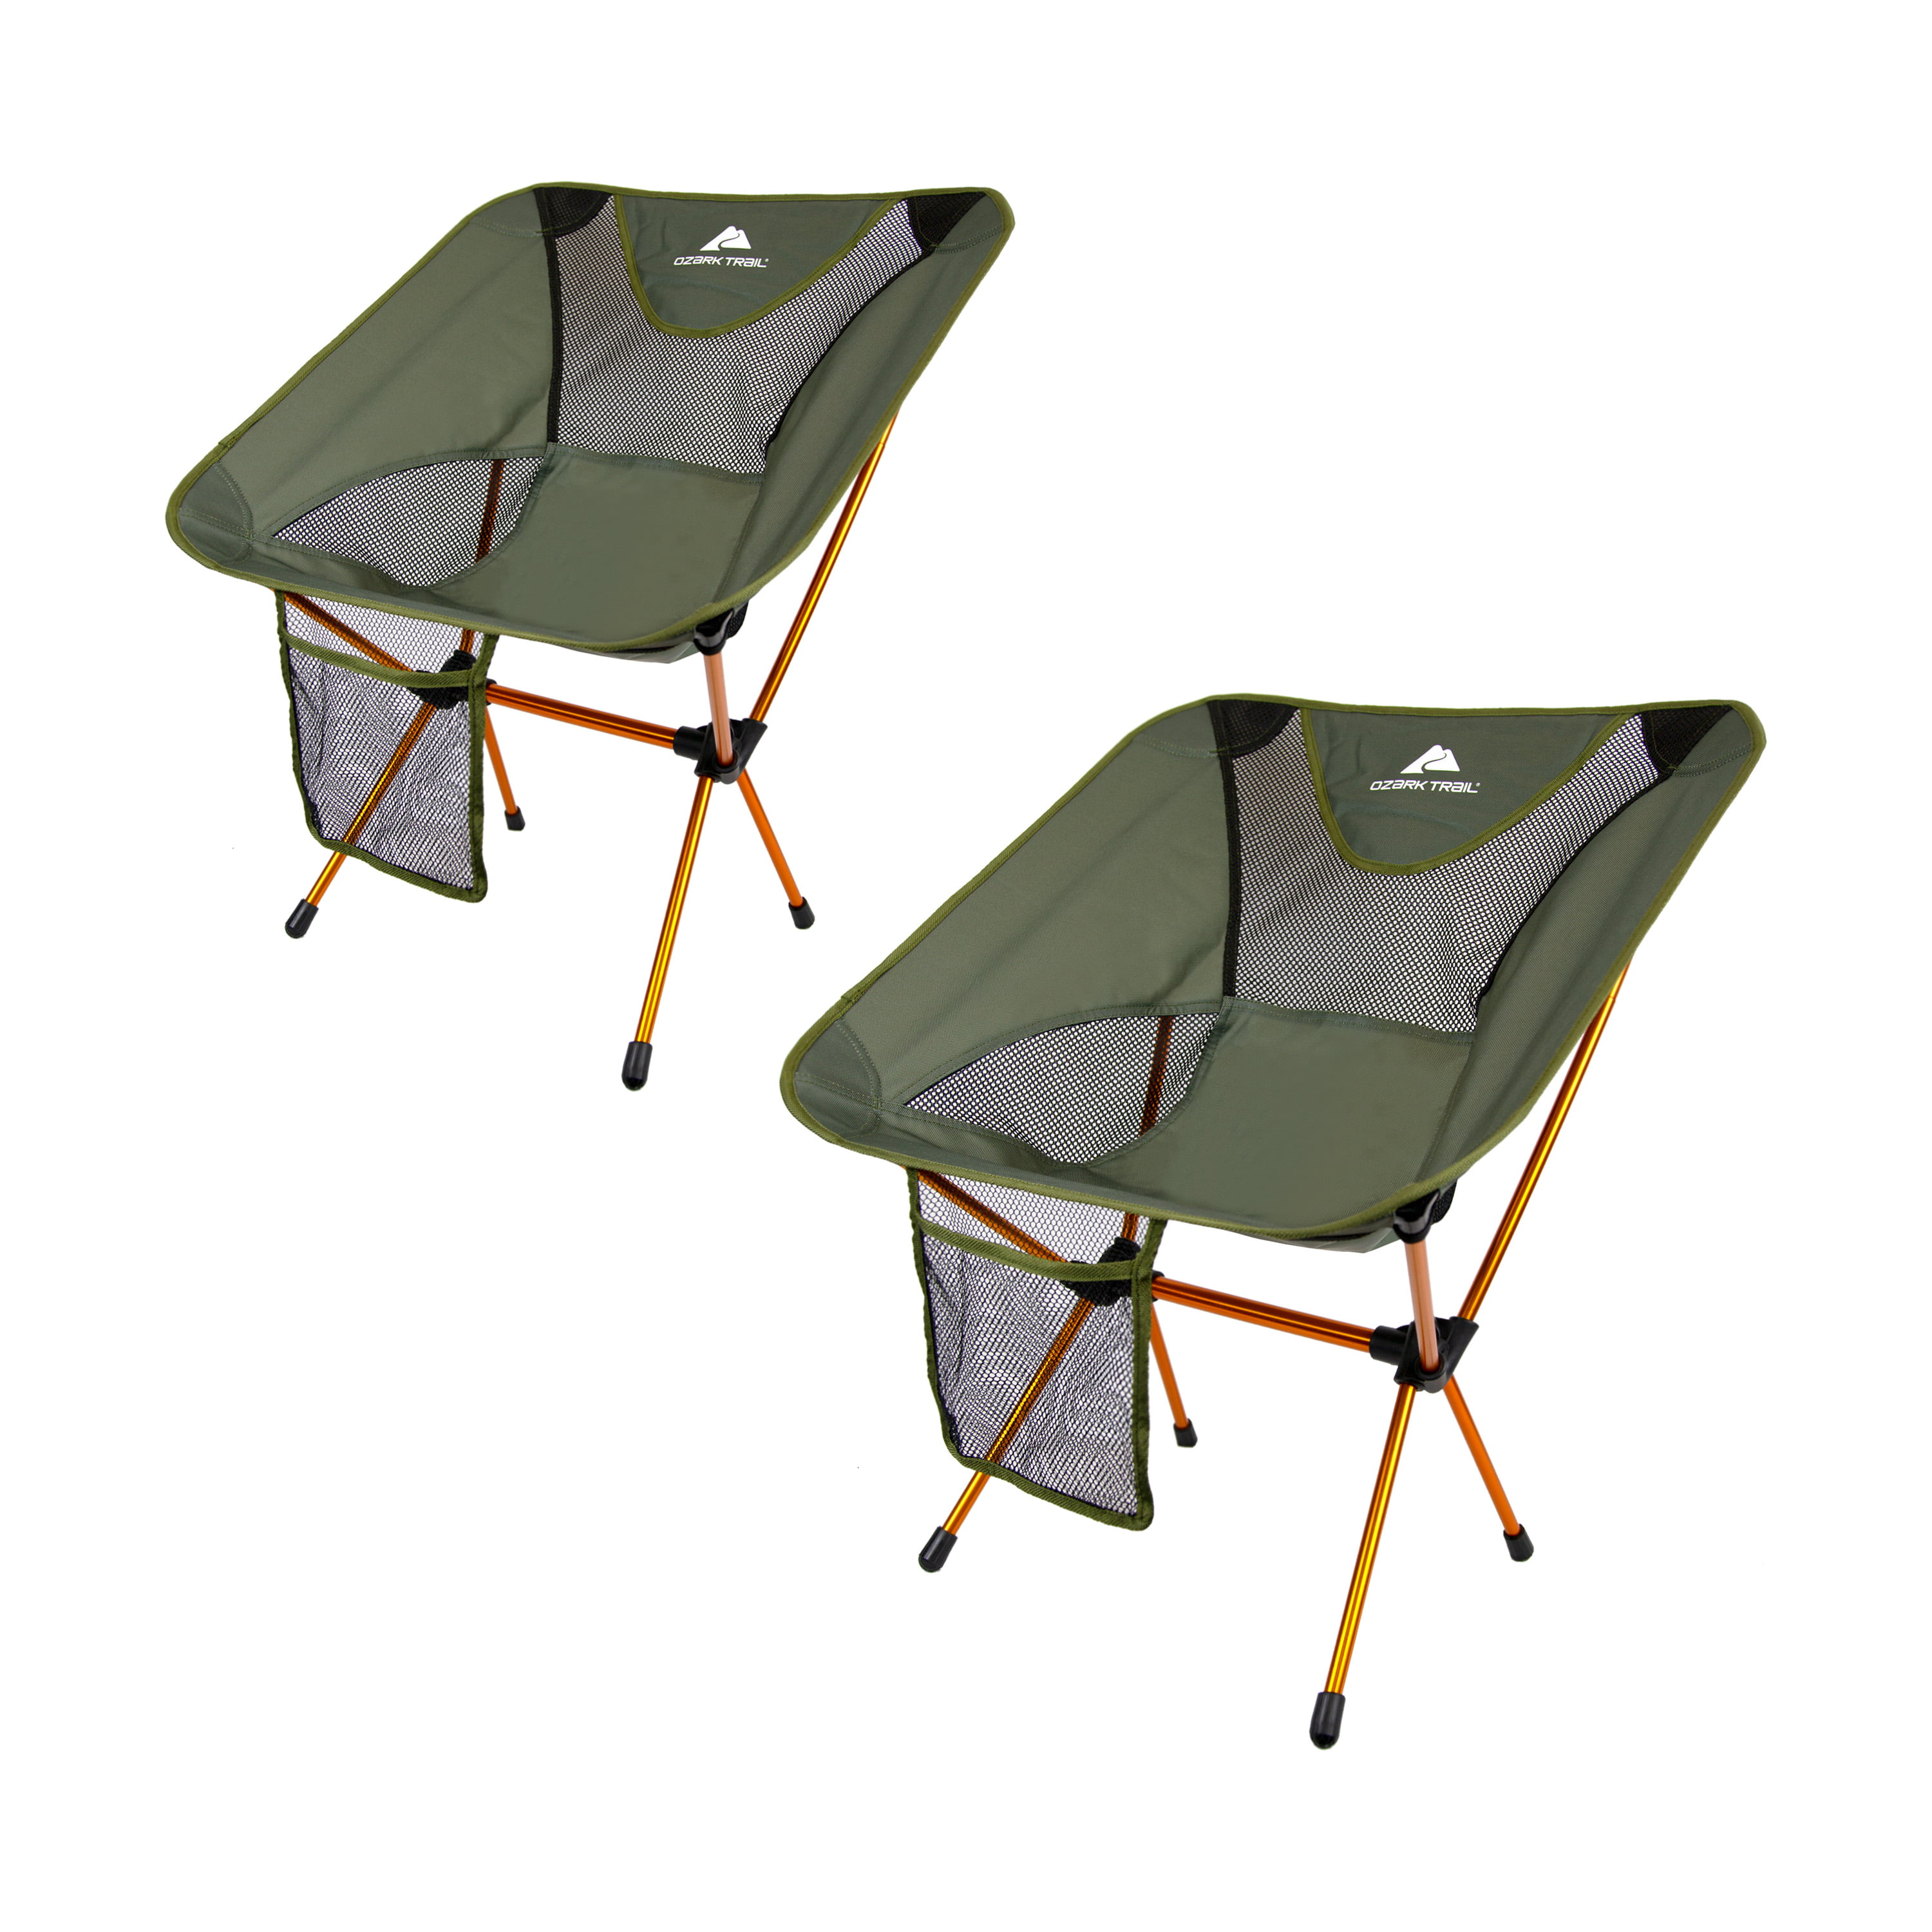 ozark trail compact mesh chair